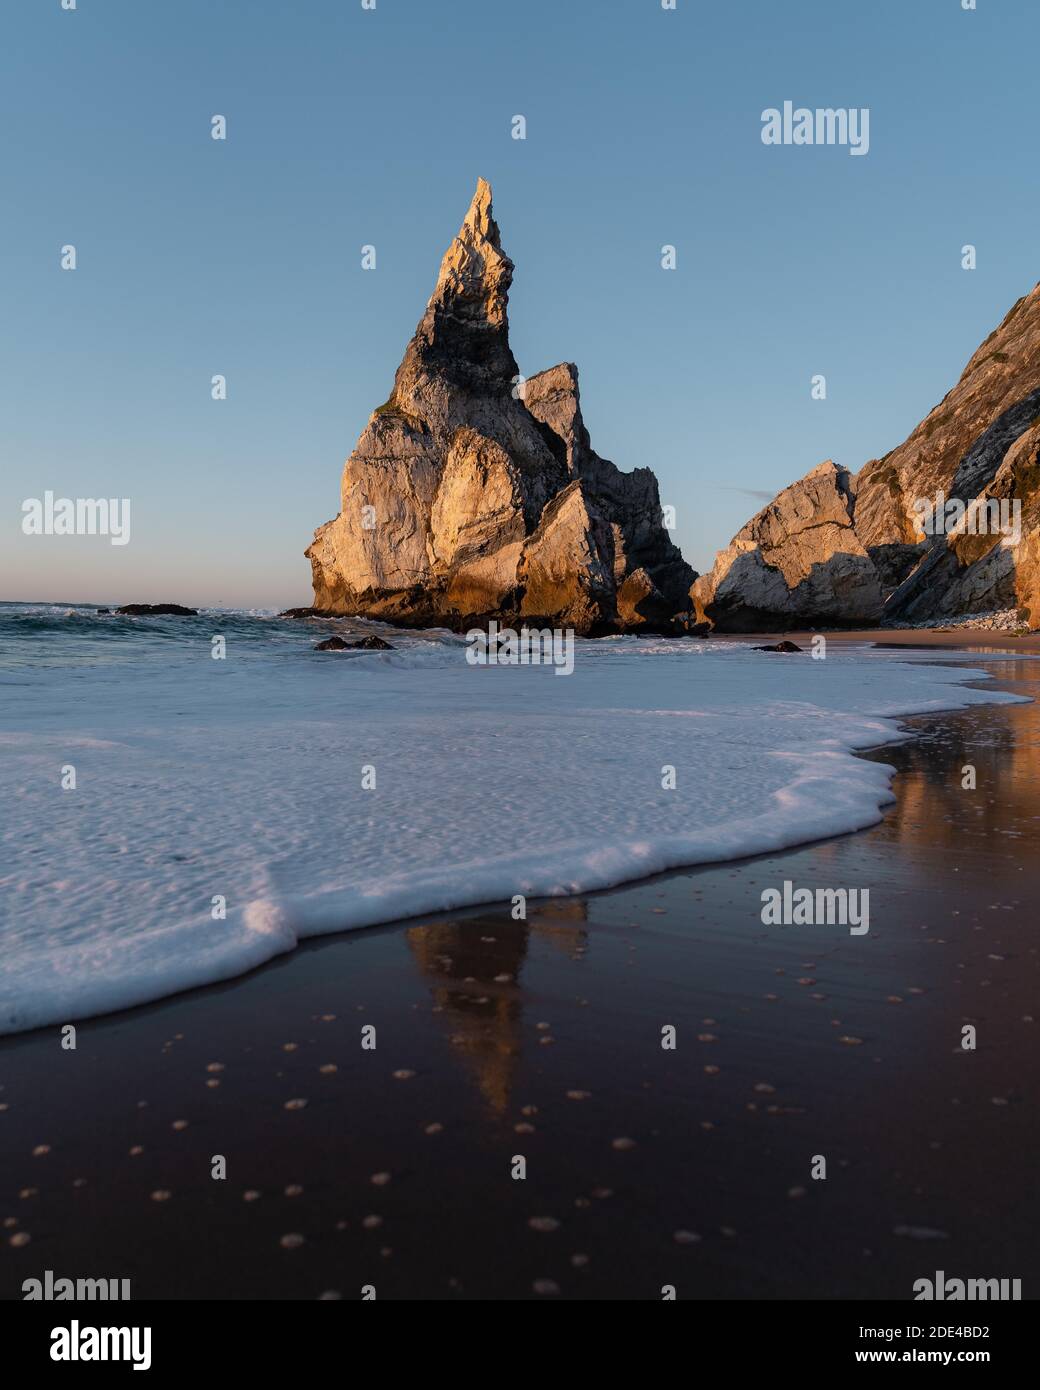 Rochers marqués à la plage de Praia da Ursa avec réflexion et eau de mer mousseuse, Ulgueira, Portugal Banque D'Images